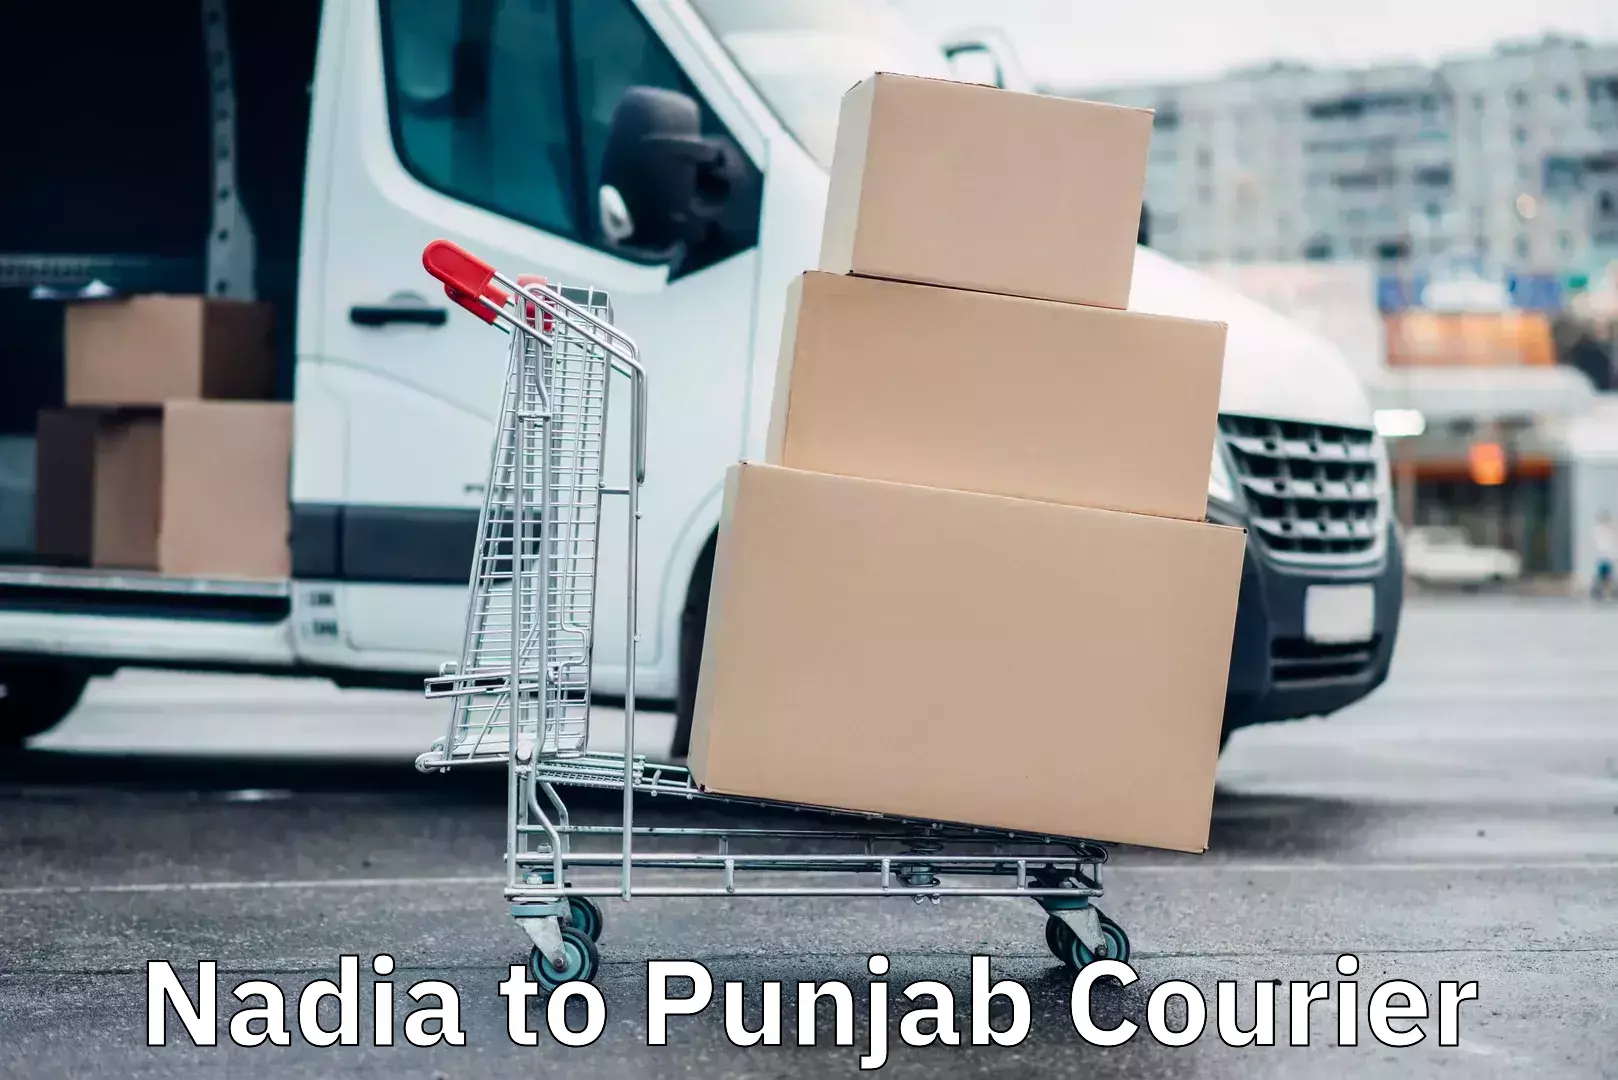 Quick booking process Nadia to Punjab